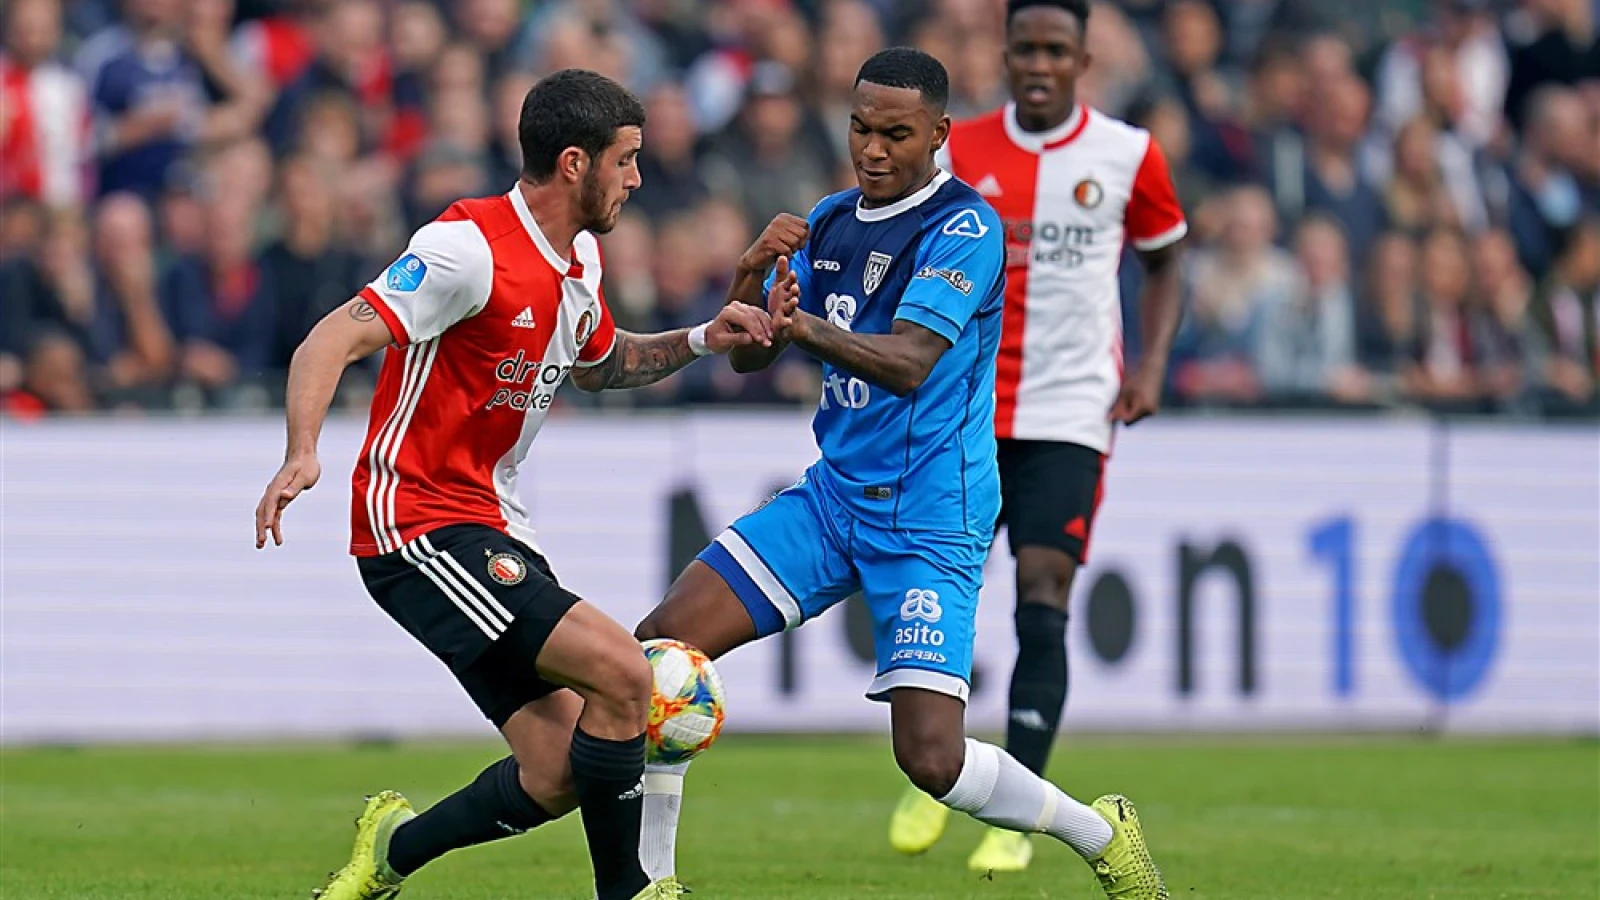 LIVE | Feyenoord - Heracles Almelo 1-1 | Einde wedstrijd